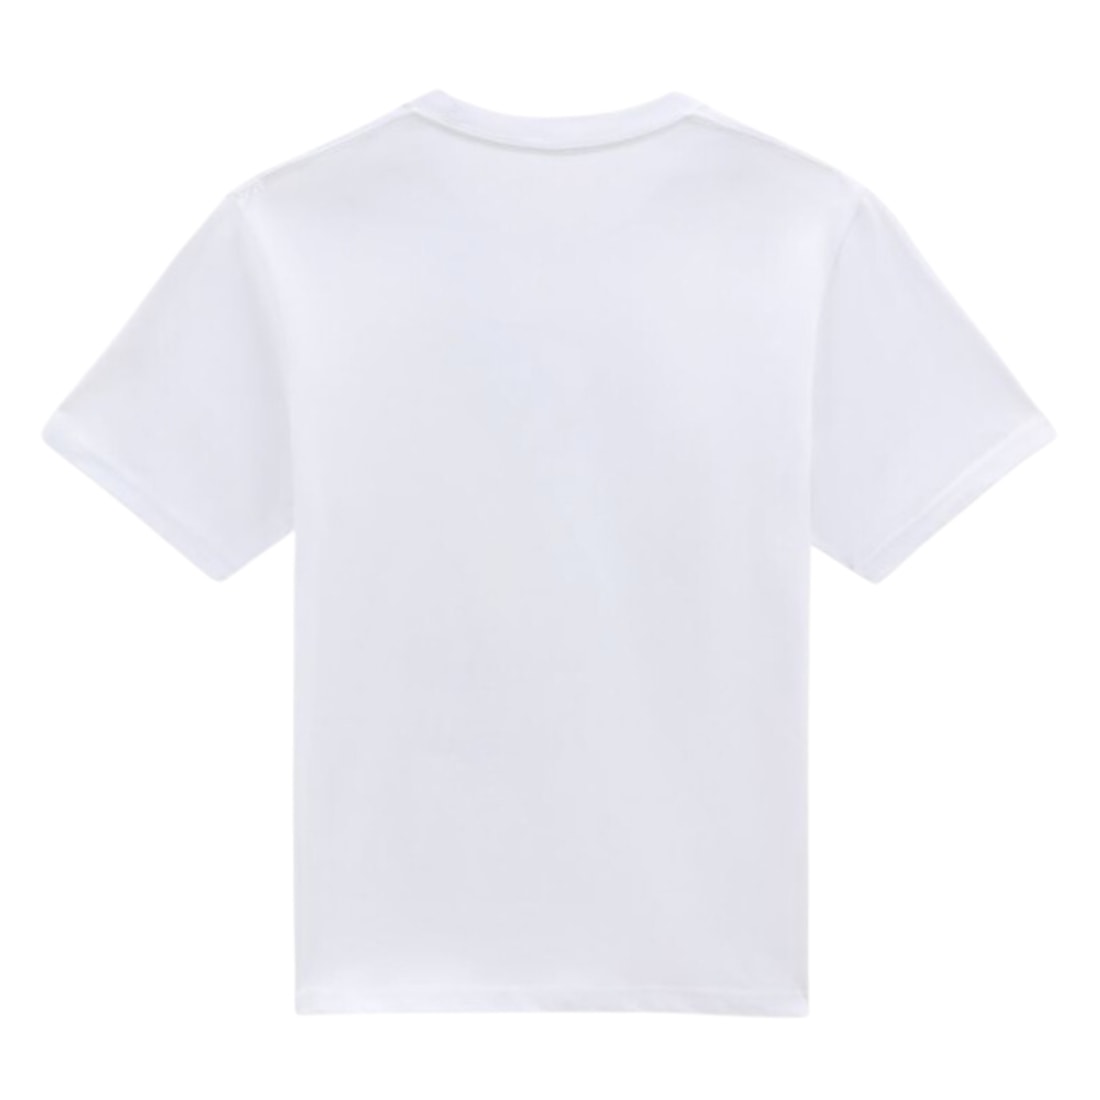 Vans Kids Dino Sk8 Boys T-Shirt - White